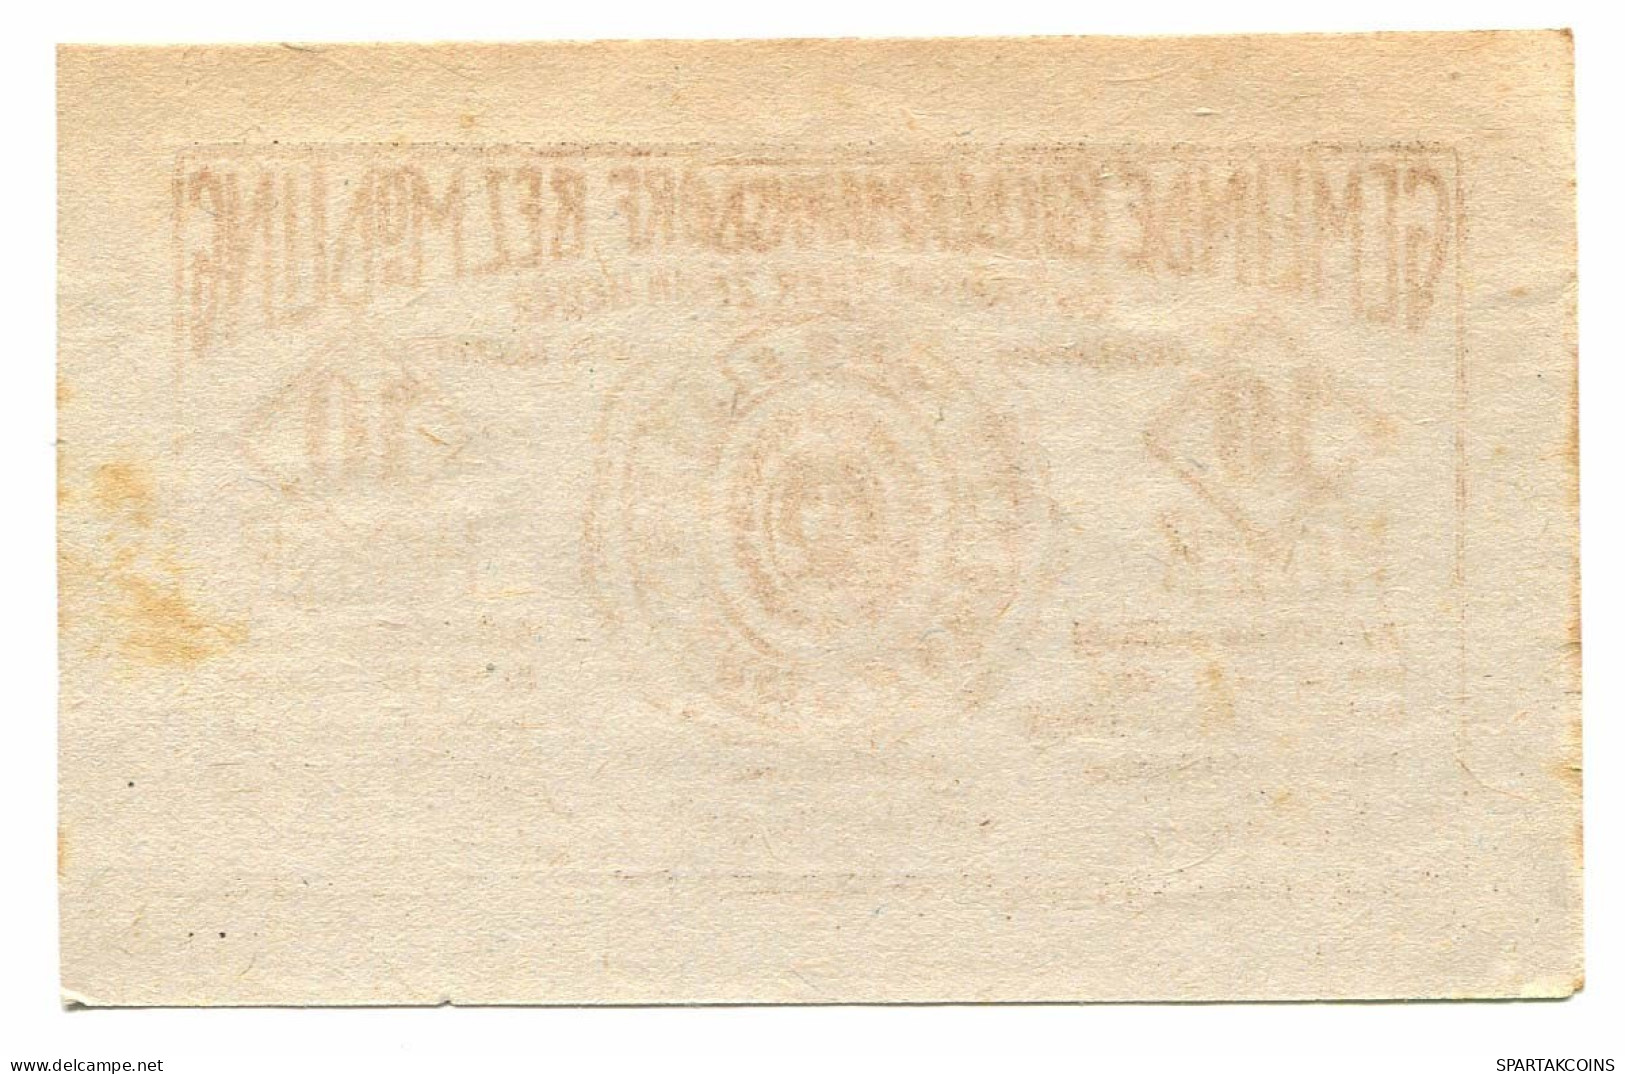 10 Heller 1920 BIEDERMANNSDORF Österreich UNC Notgeld Papiergeld Banknote #P10430 - [11] Local Banknote Issues